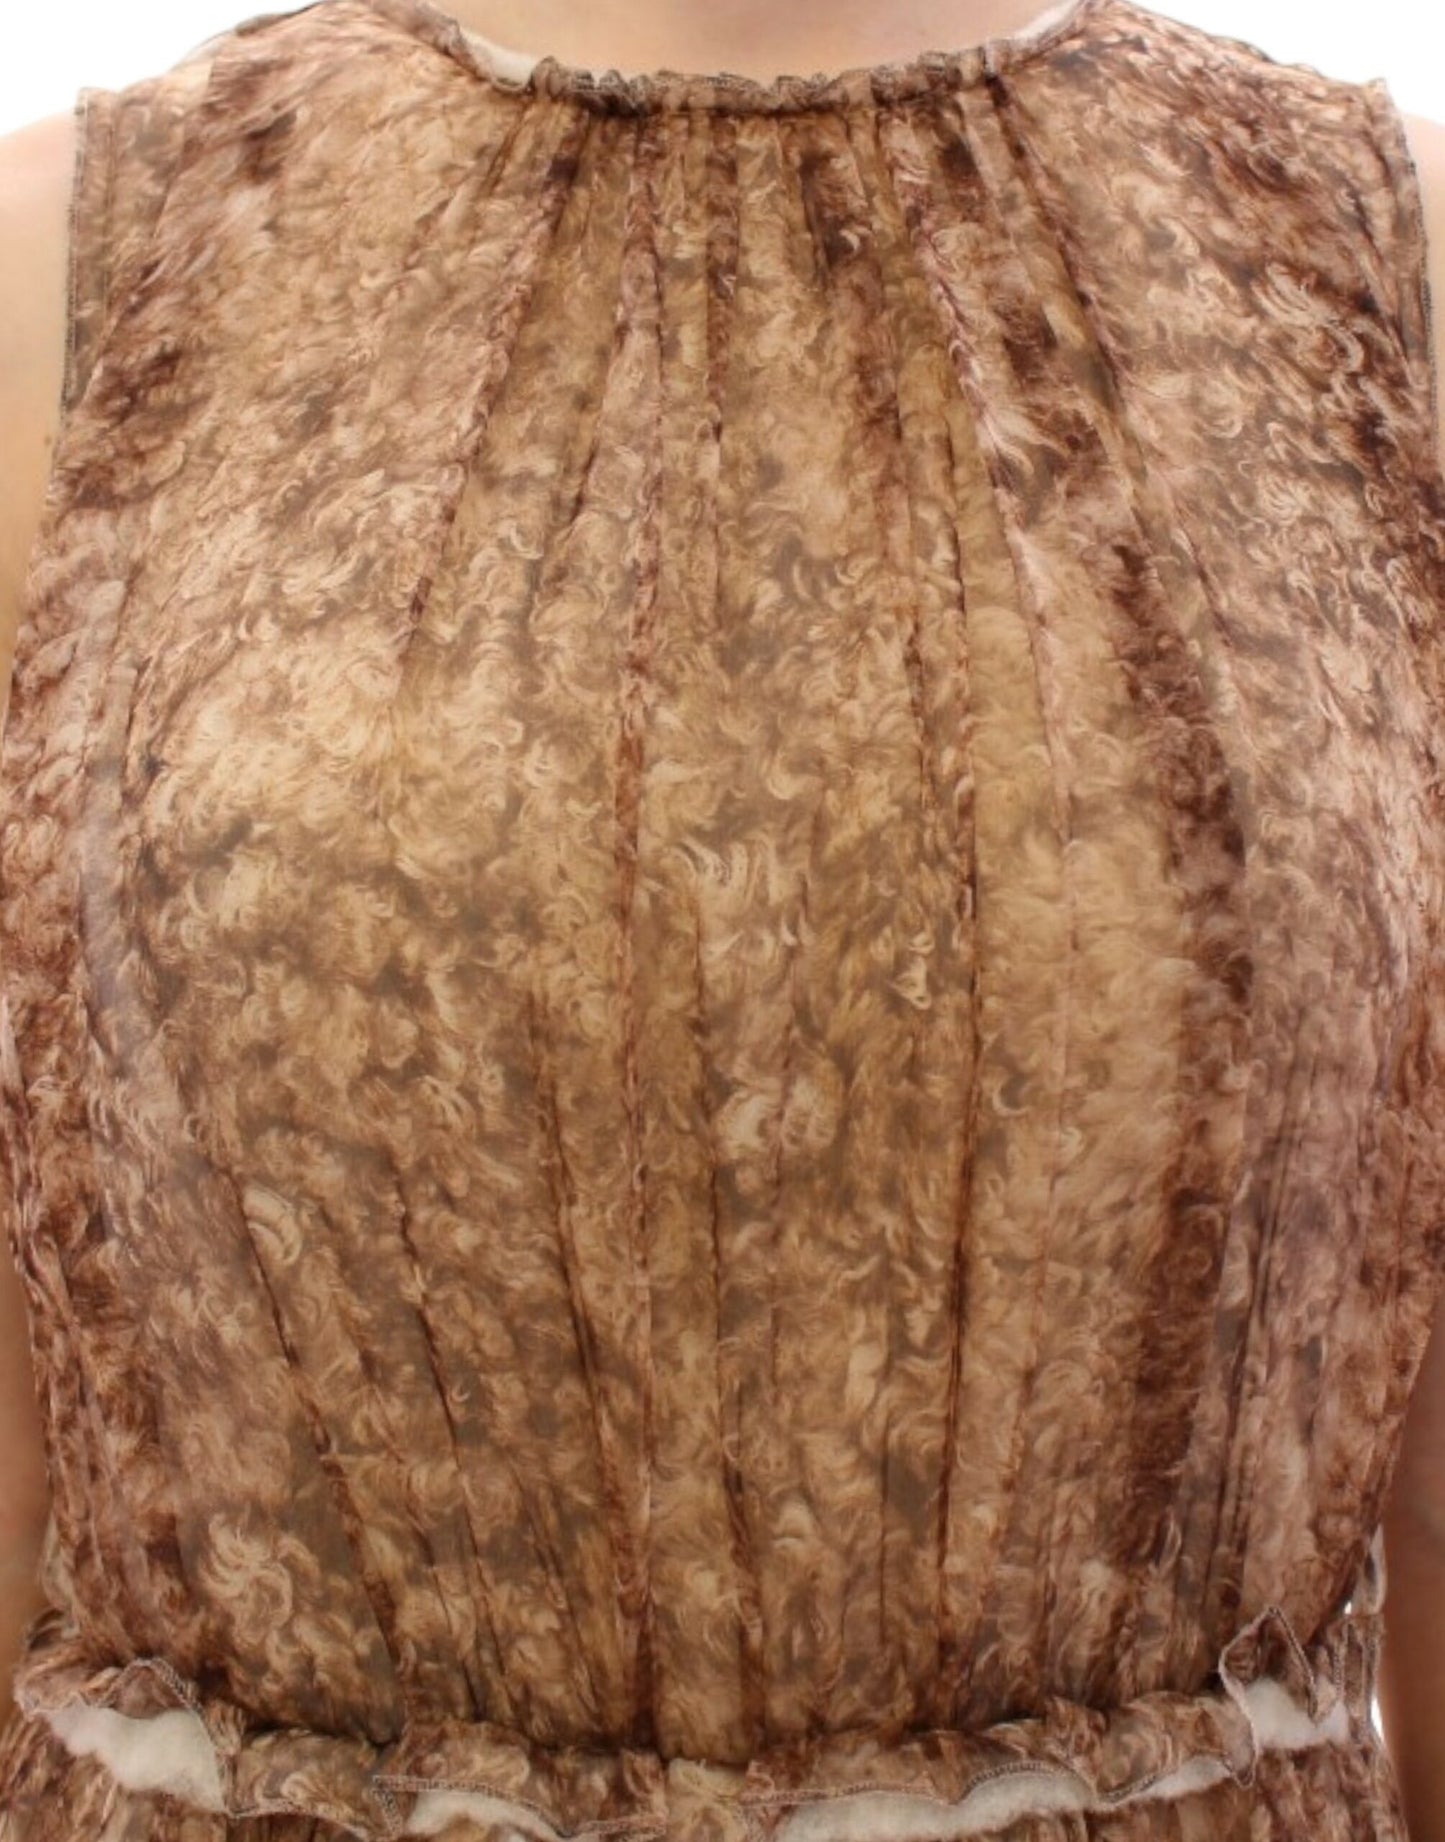 Elegant Silk Sleeveless Knee-Length Dress